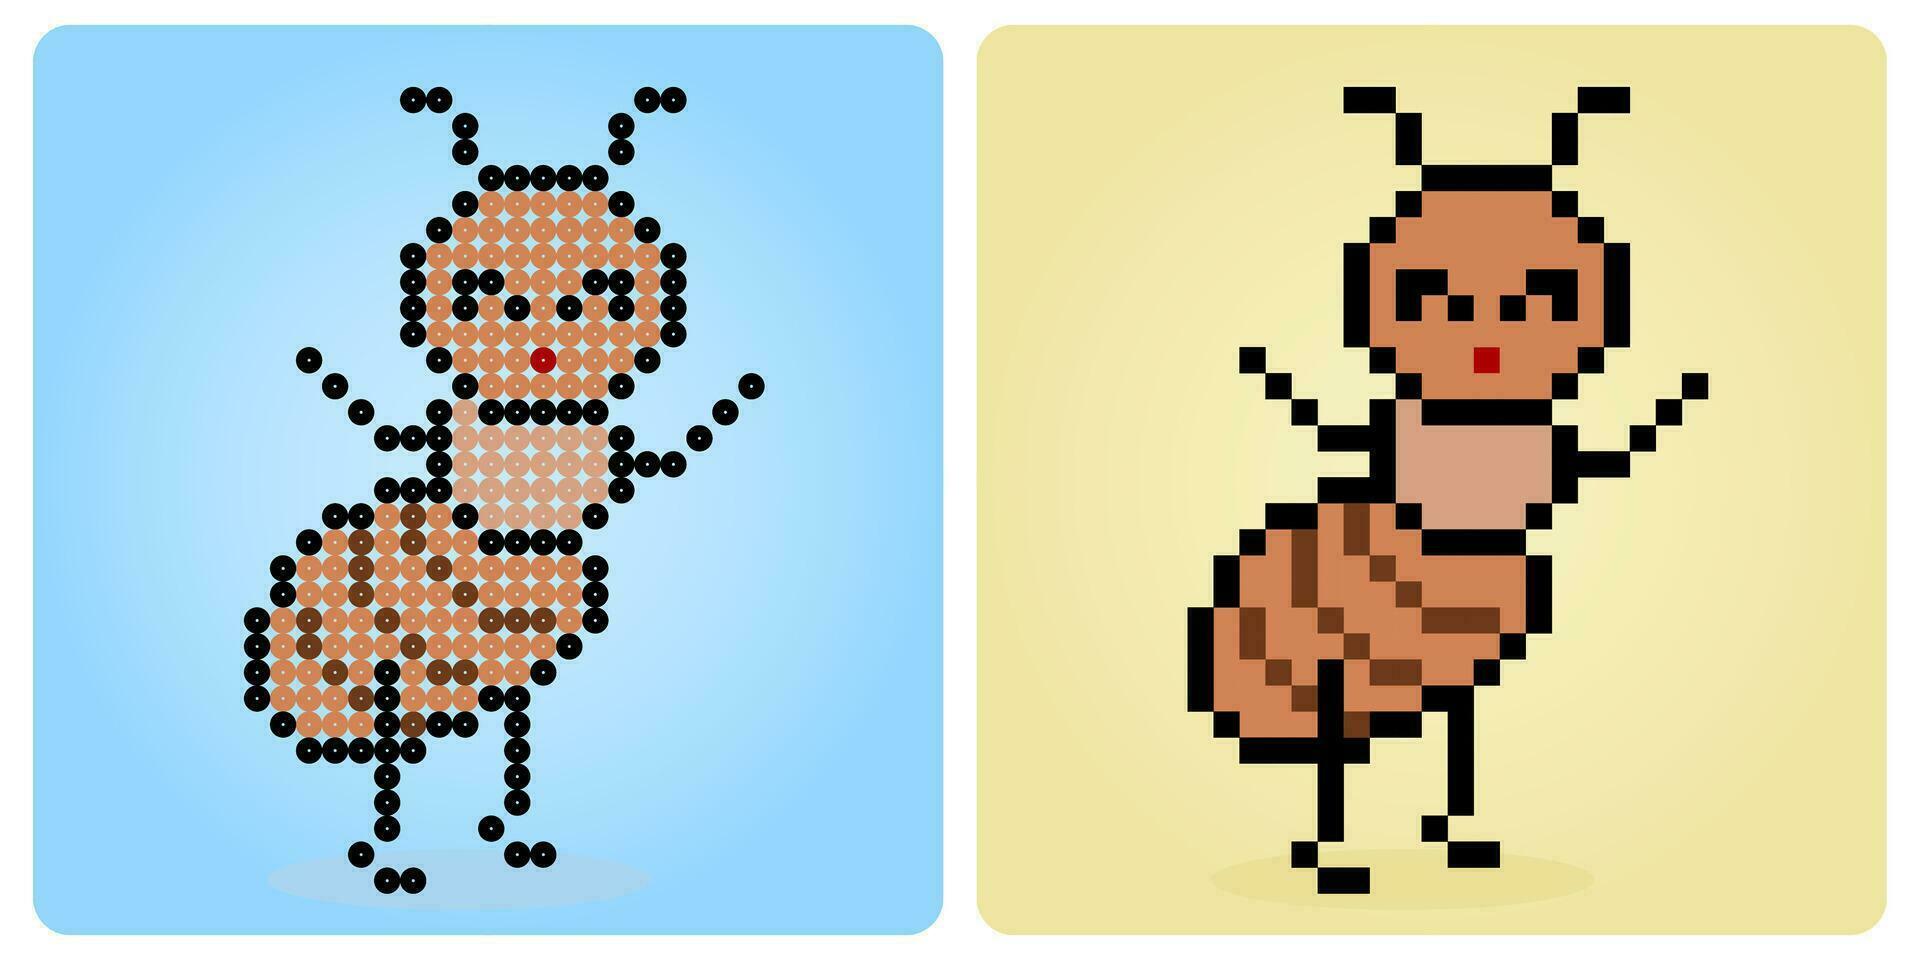 8 bisschen Pixel Ameise Charakter. Tiere zum Spiel Vermögenswerte und Perlen Muster im Vektor Illustrationen.